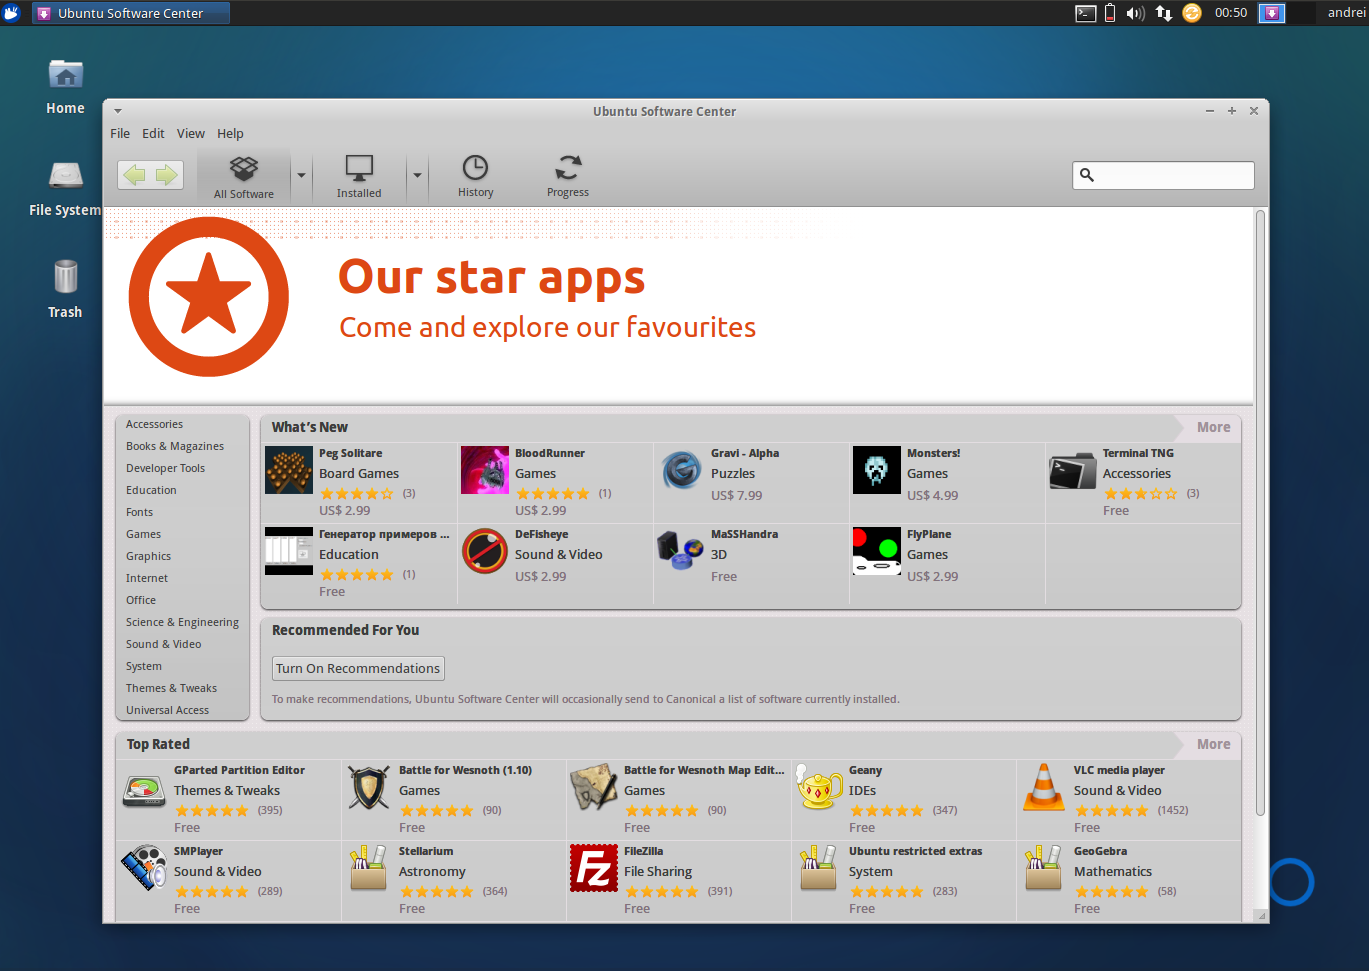 Xubuntu 13.04 Обзор